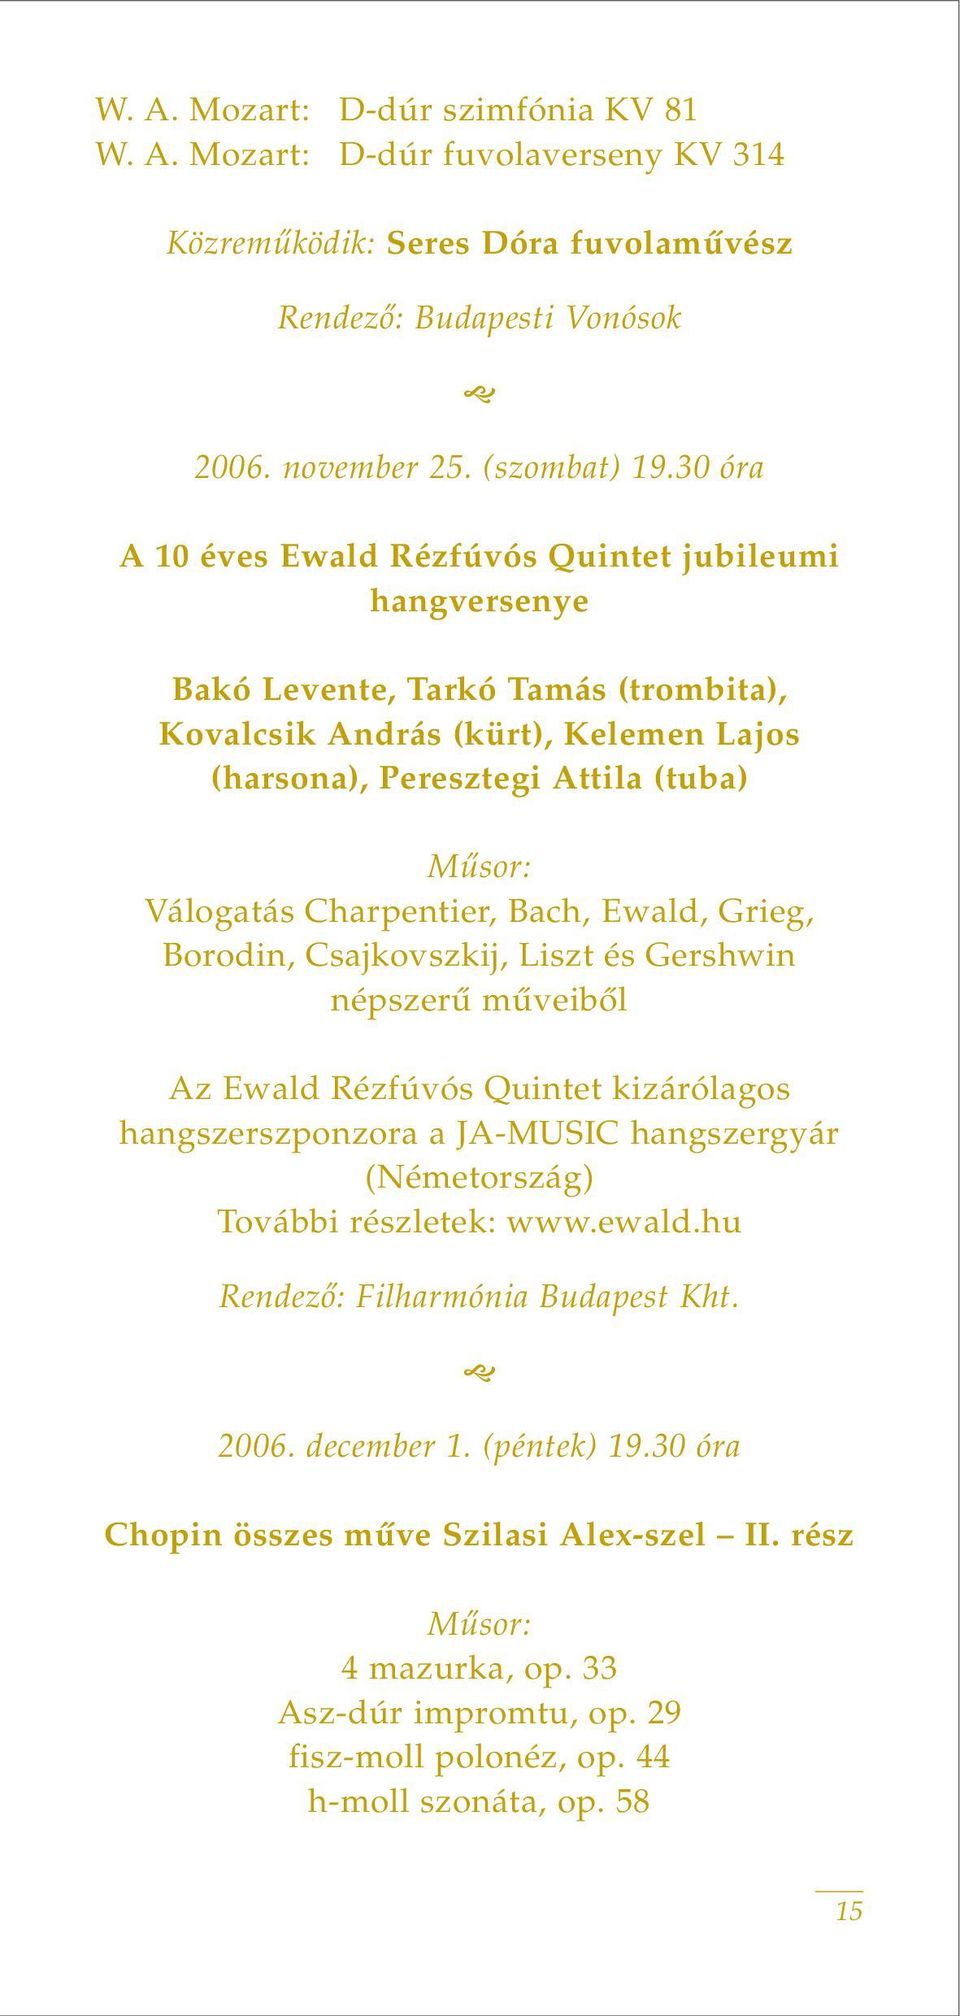 Charpentier, Bach, Ewald, Grieg, Borodin, Csajkovszkij, Liszt és Gershwin népszerû mûveibôl Az Ewald Rézfúvós Quintet kizárólagos hangszerszponzora a JA-MUSIC hangszergyár (Németország) További